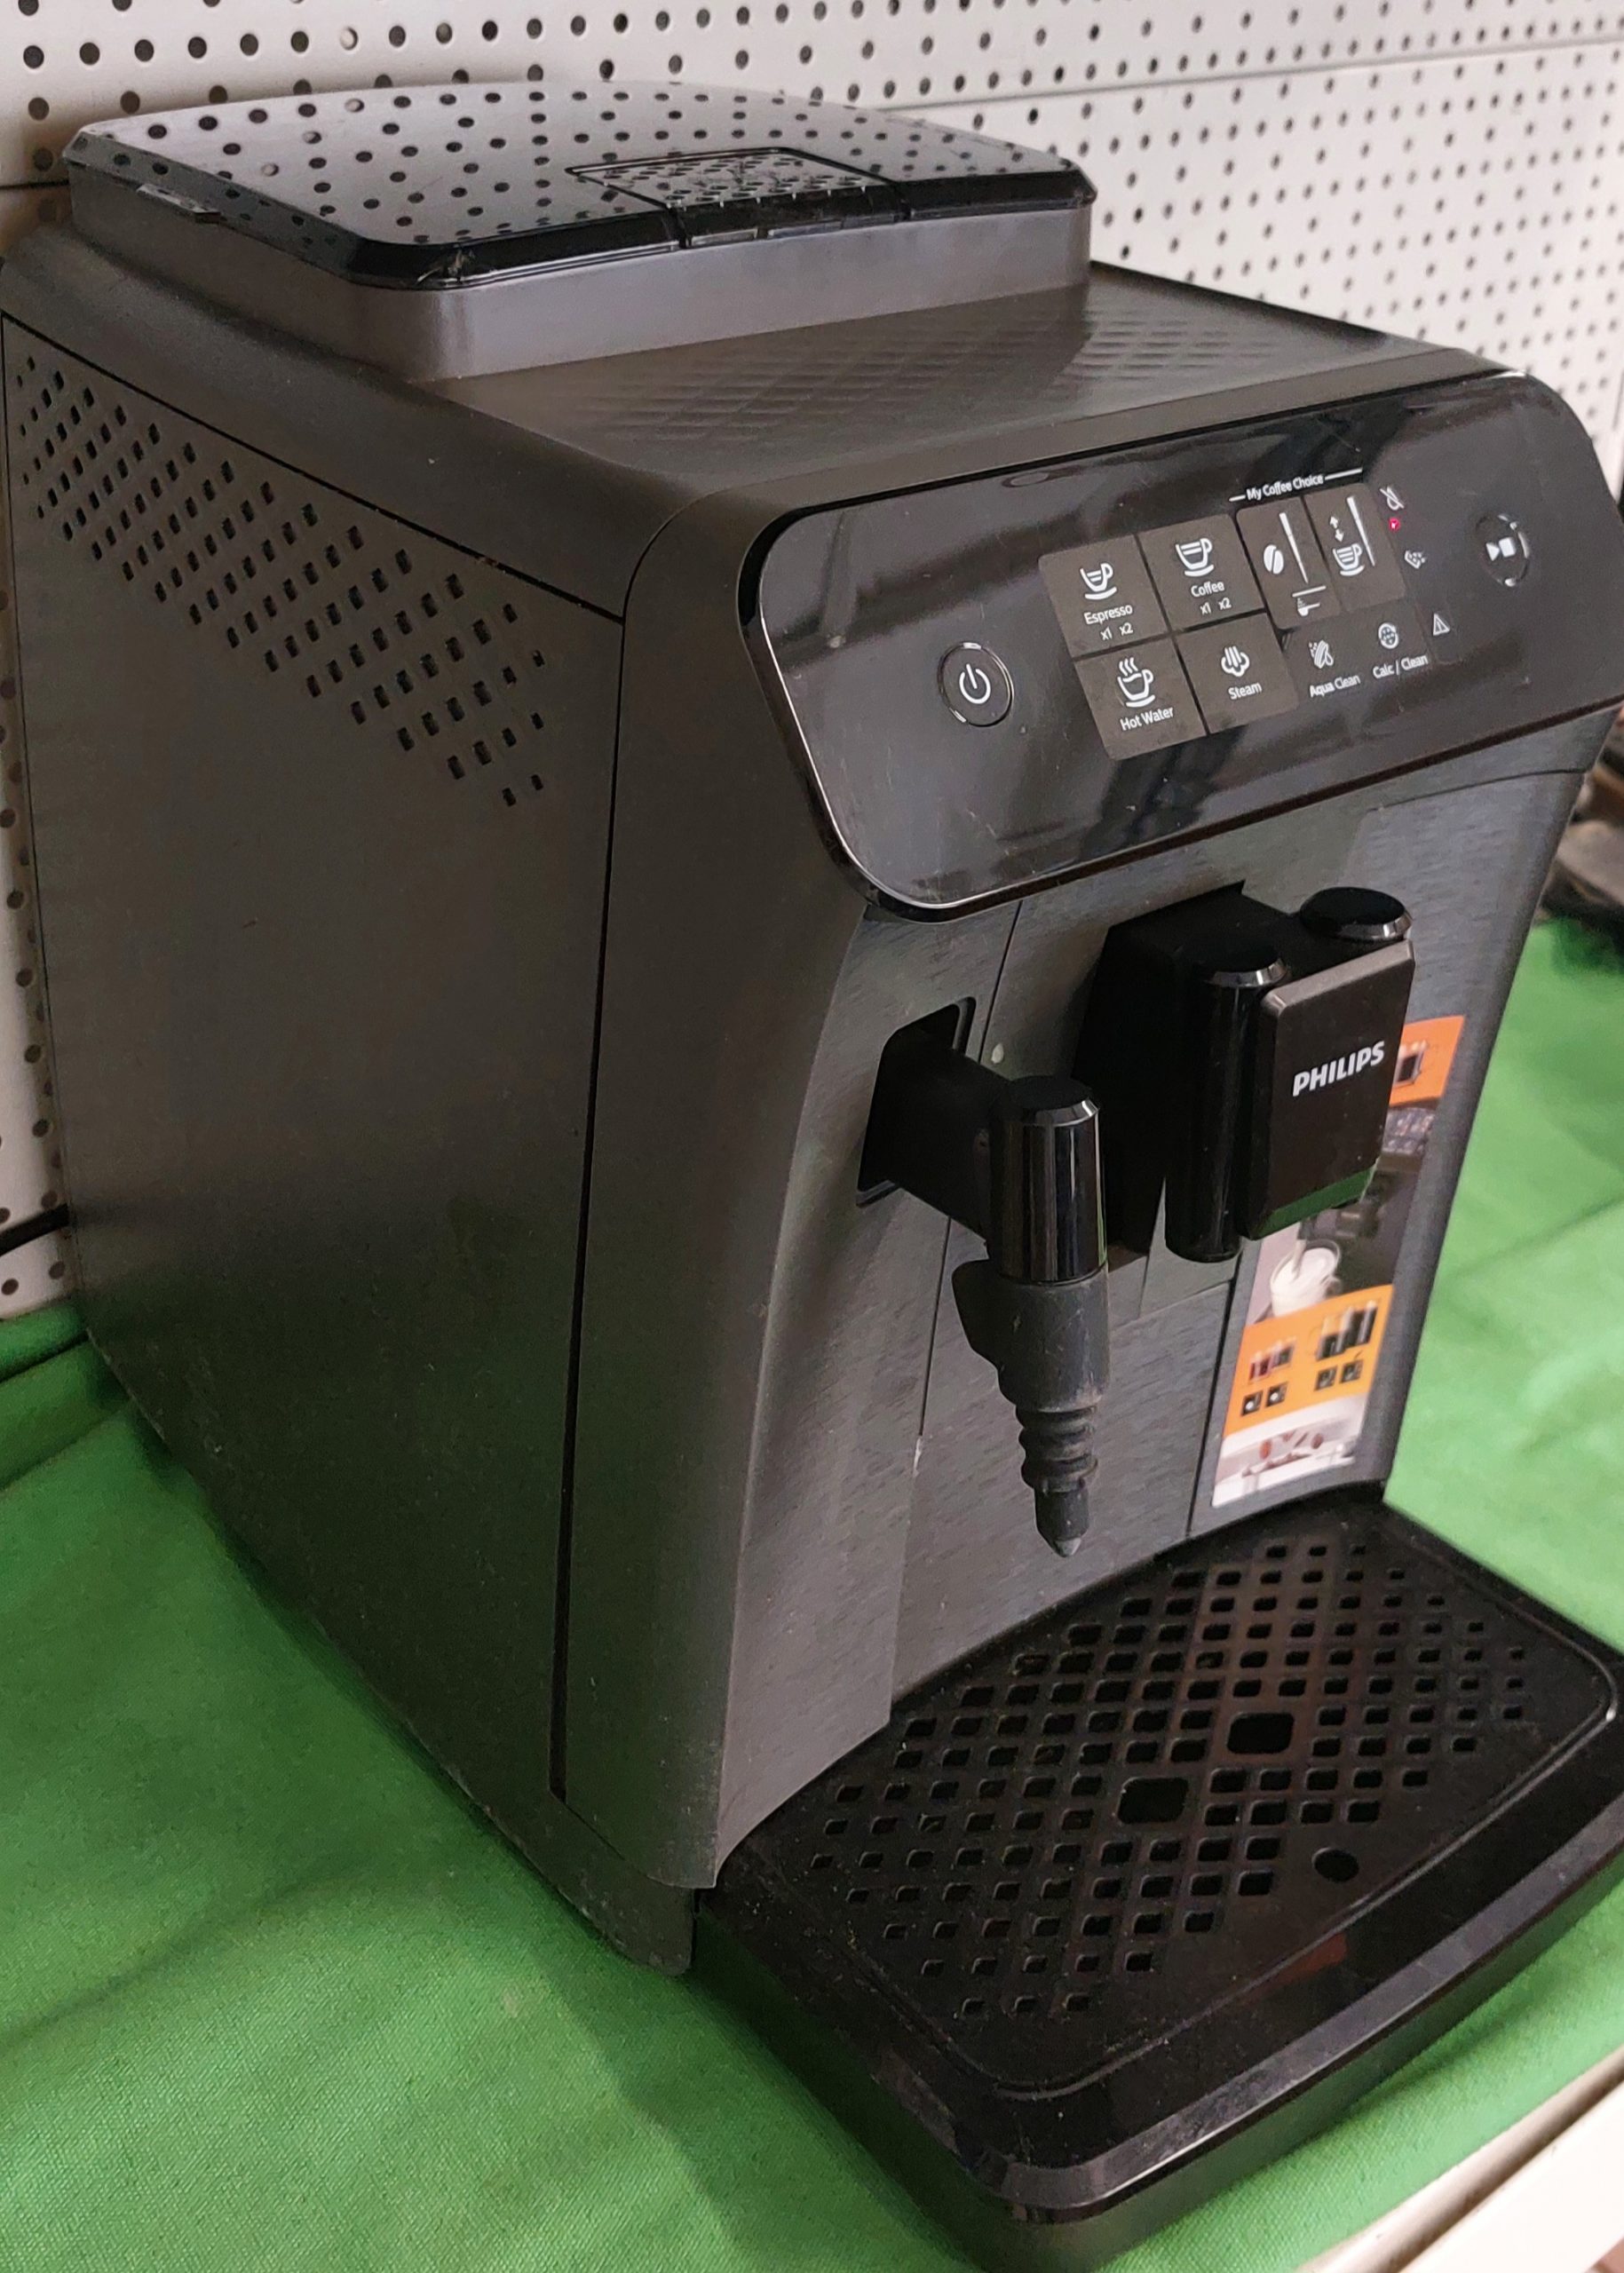 Philips EP0824/00 Series 800 Automata kávéfőző, kiemelt kép